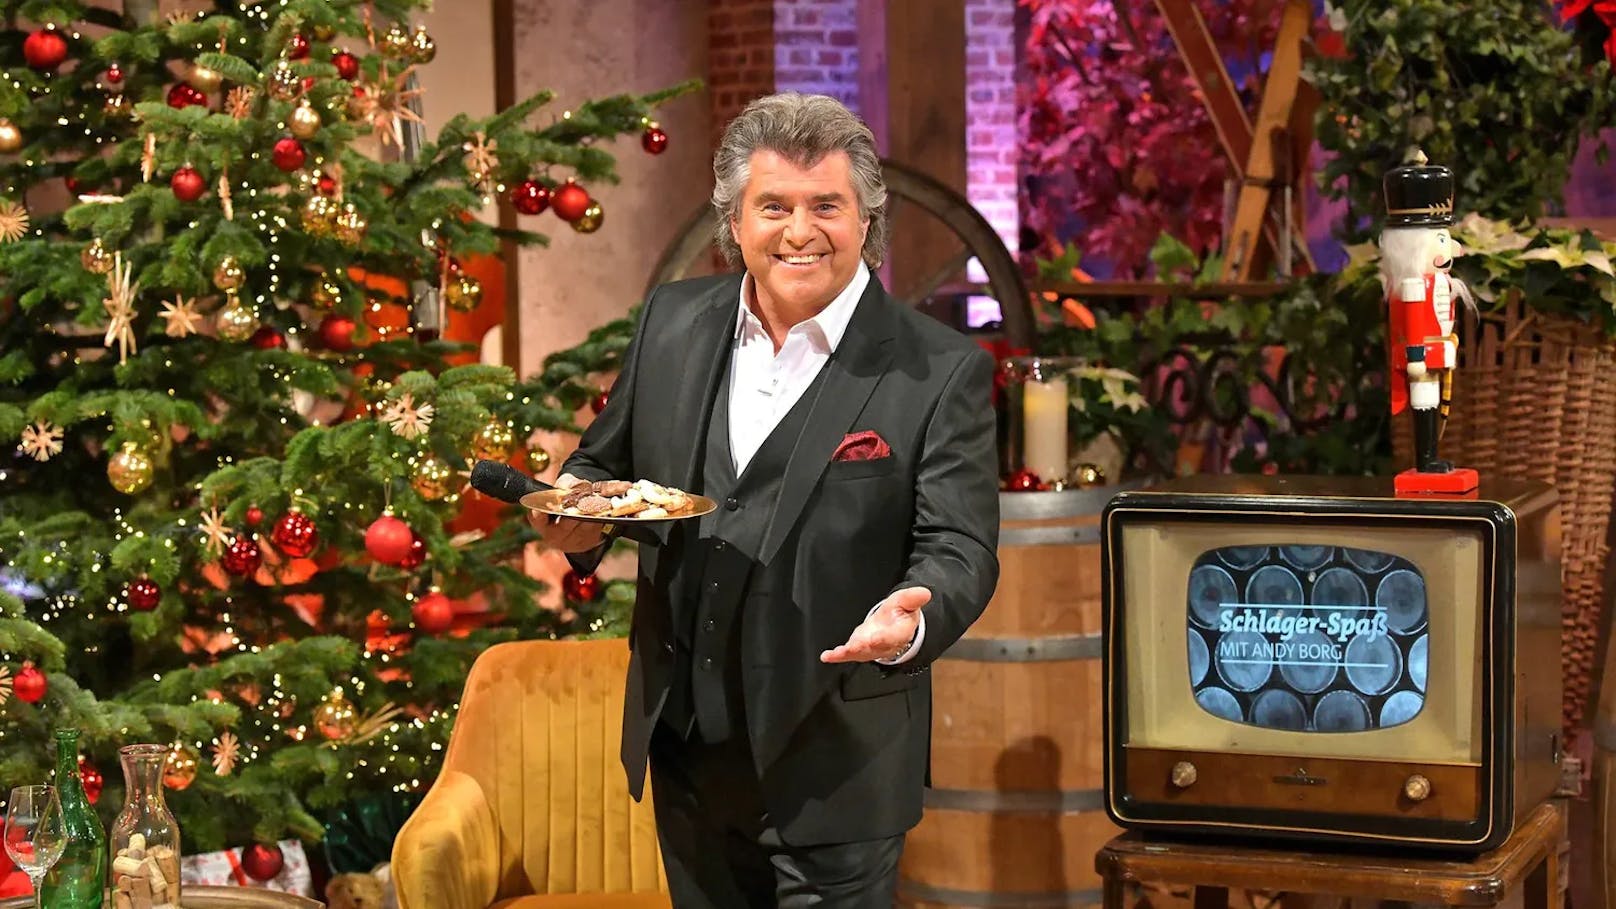 Am Heiligabend begrüßt <strong>Andy Borg</strong> die TV-Zuschauer aus seiner festlich geschmückten Weinstube zu "Weihnachten mit Andy Borg".